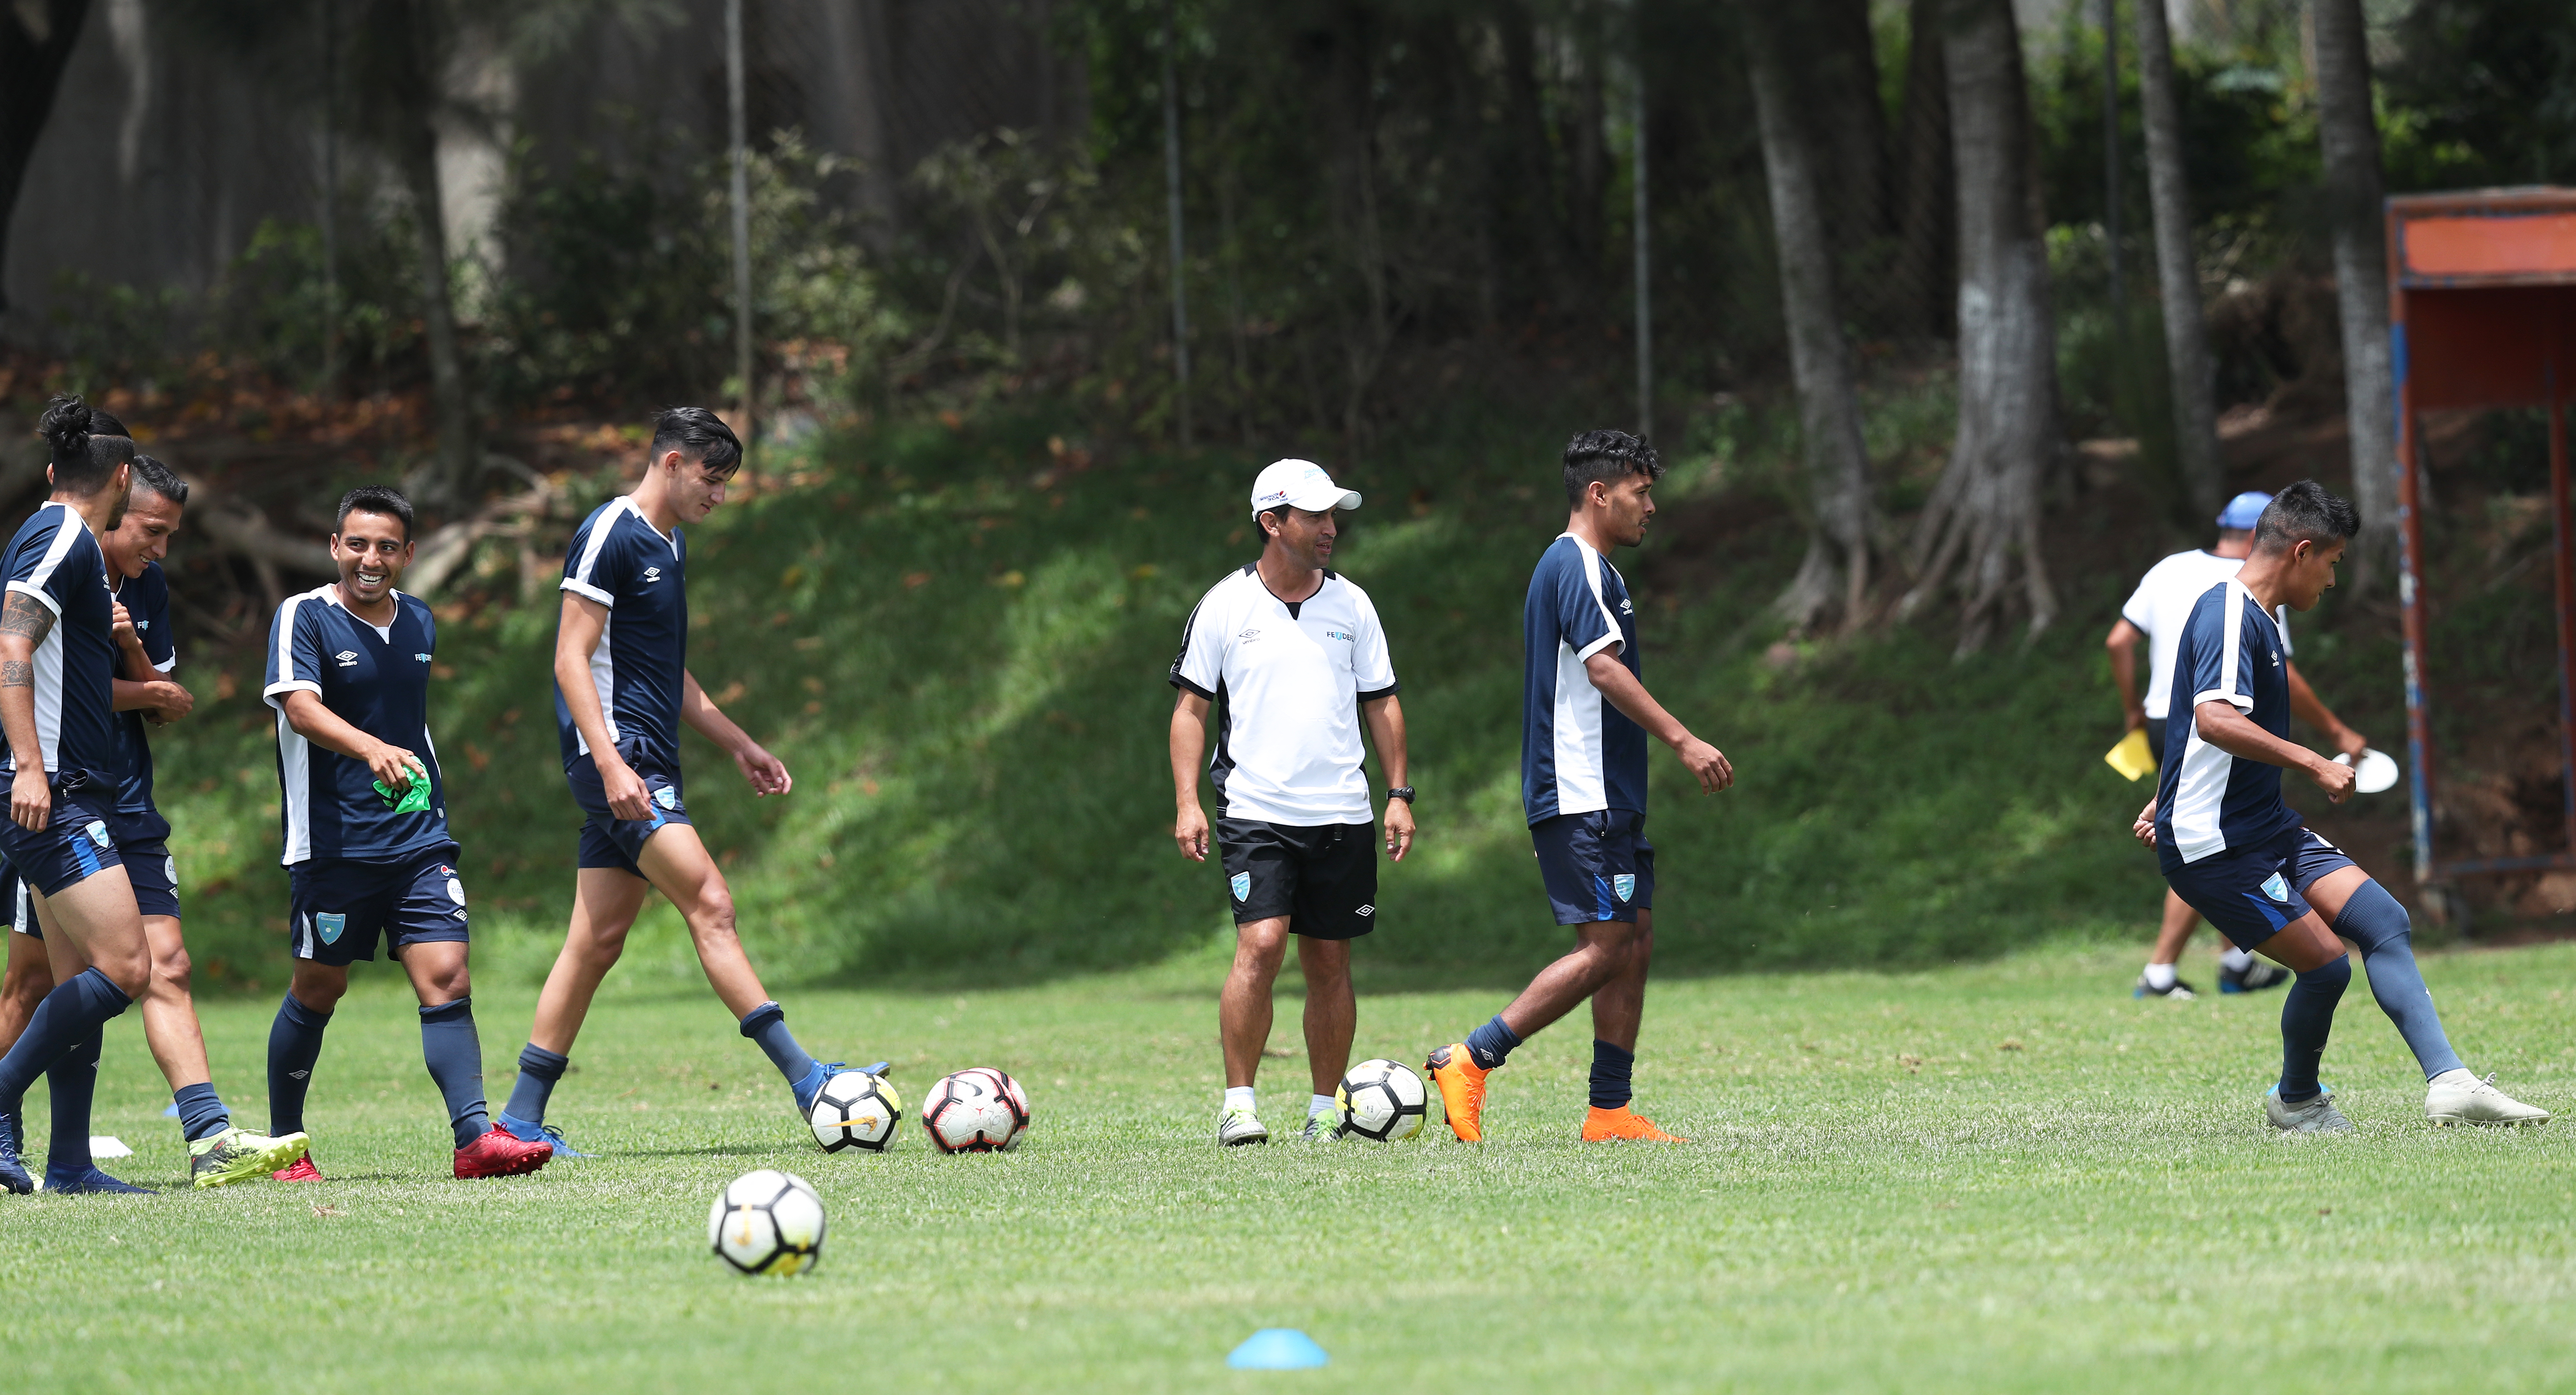 La Selección Nacional Sub 23 de Guatemala cumple con un entrenamiento en el Proyecto Goal, como parte de la preparación para disputar la serie contra Costa Rica, en el camino hacia Tokio 2020. (Foto Prensa Libre: Francisco Sánchez).